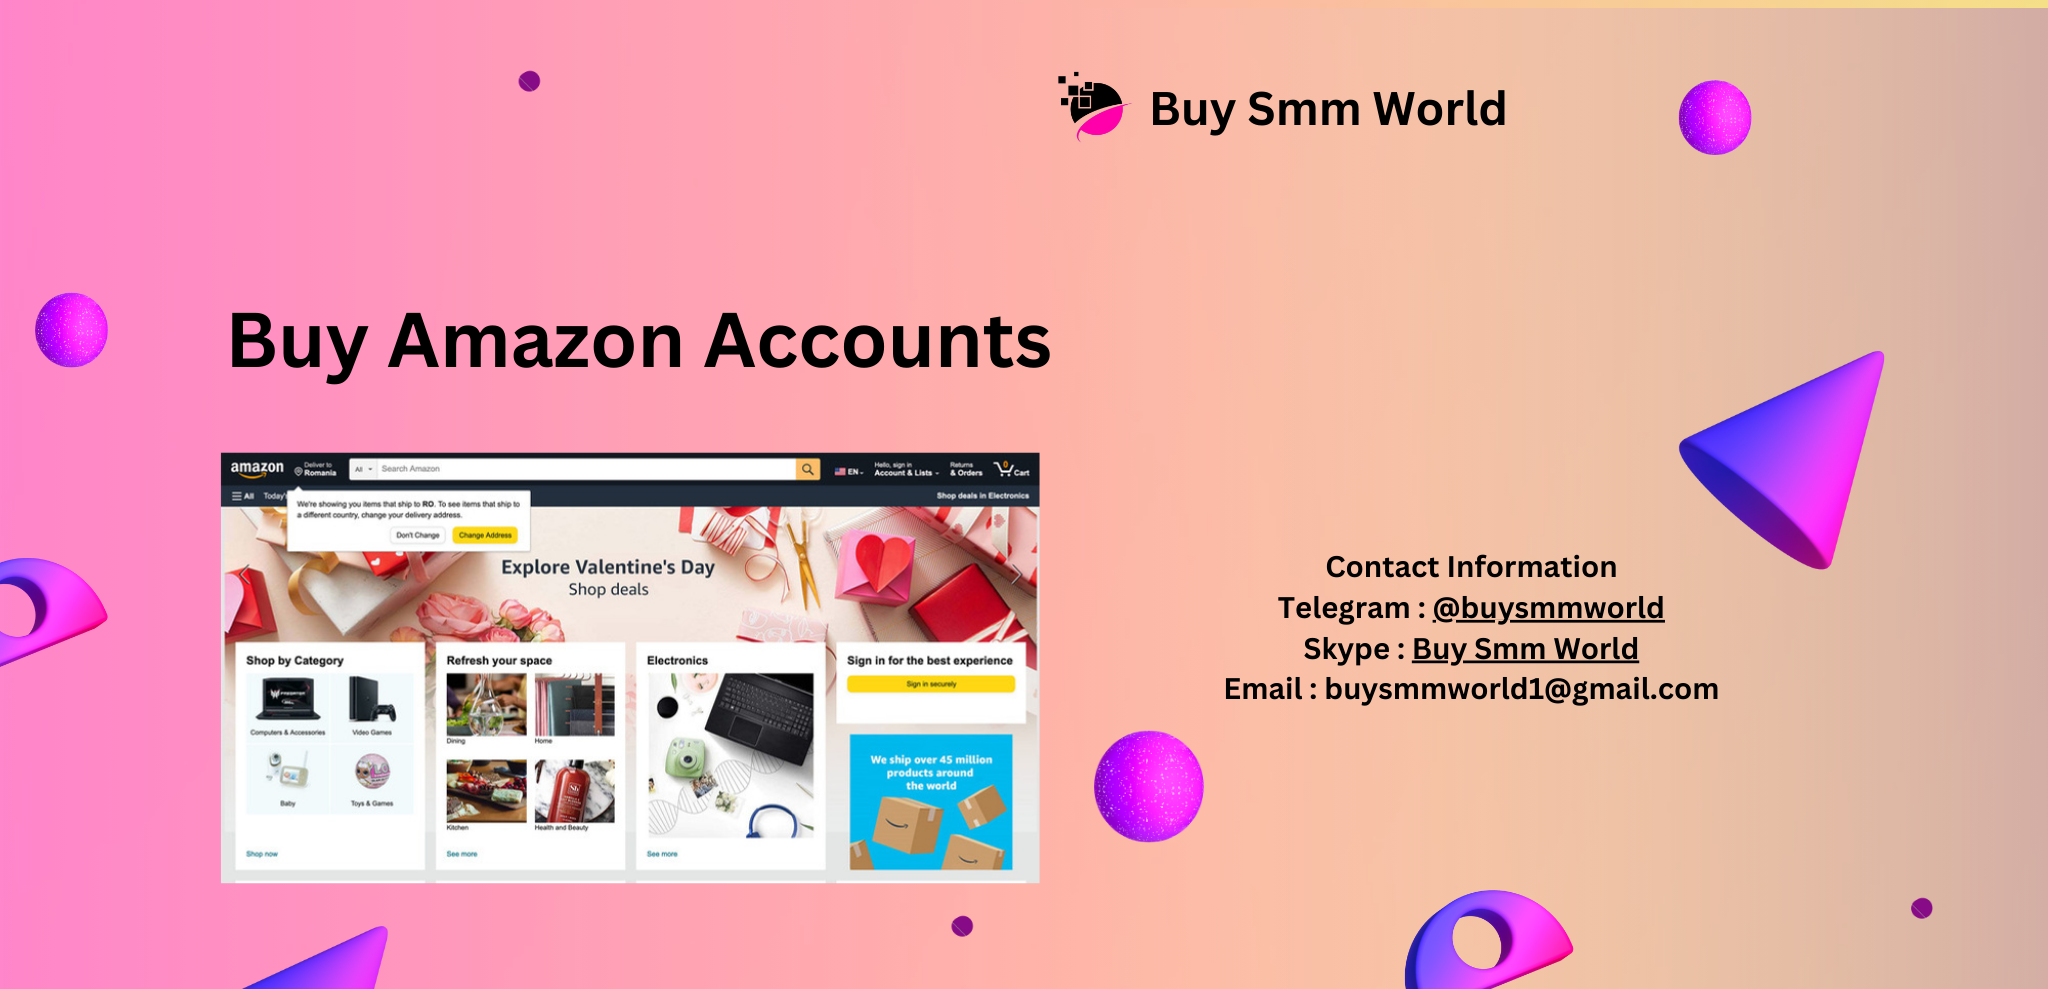 Buy Amazon Accounts
